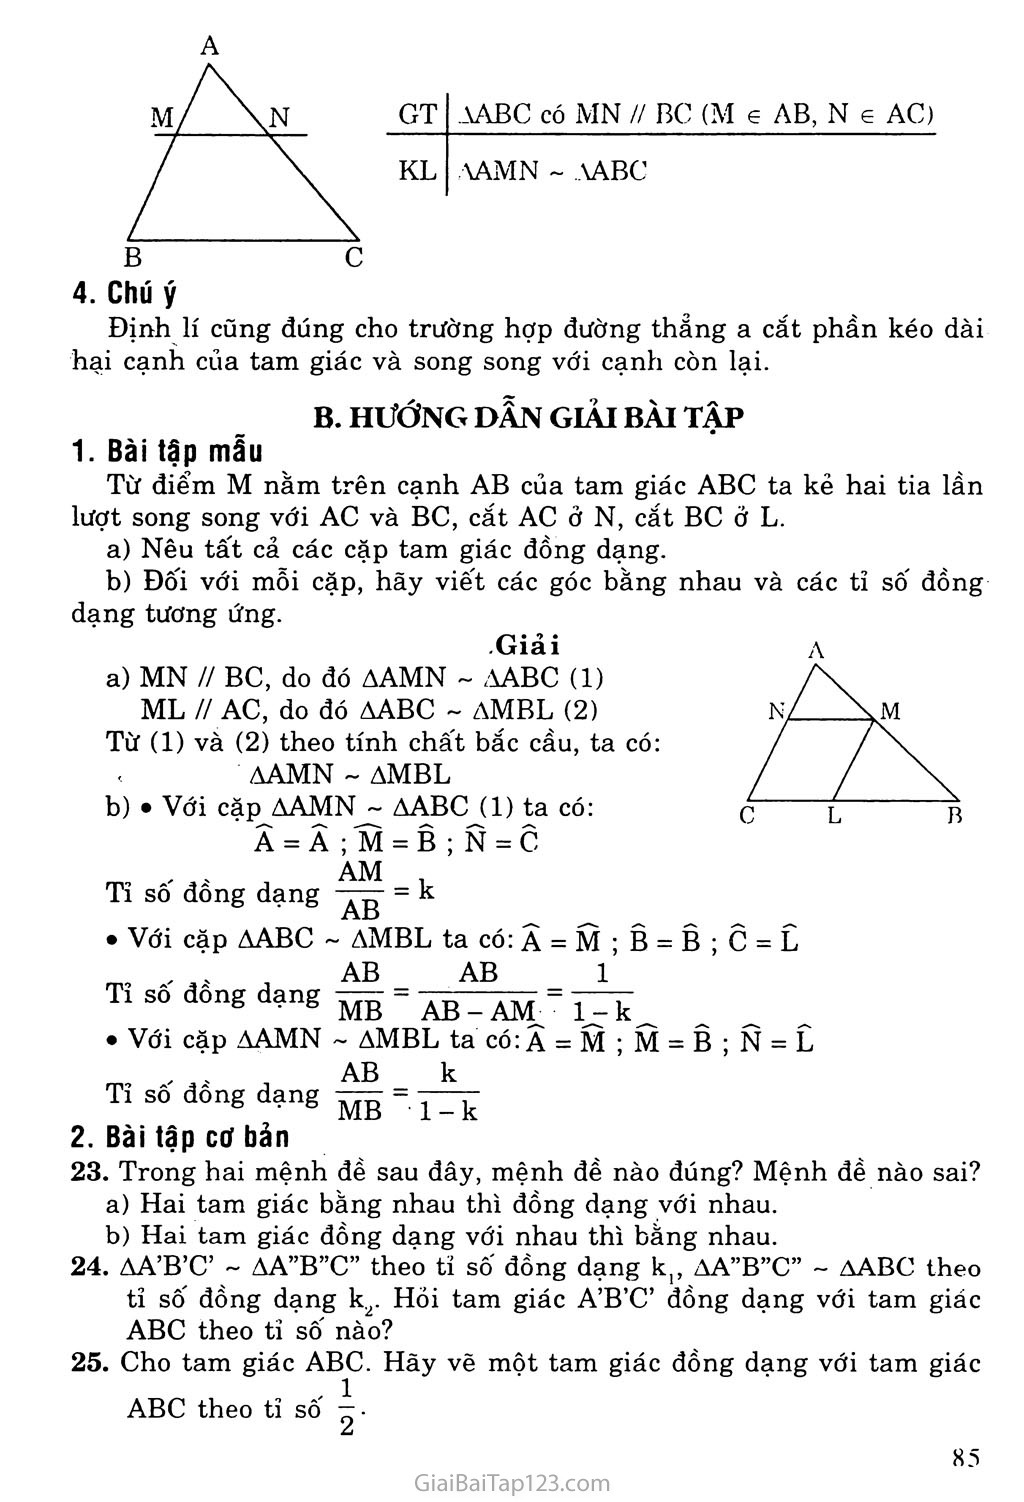 Bài 4. Khái niệm hai tam giác đồng dạng trang 2